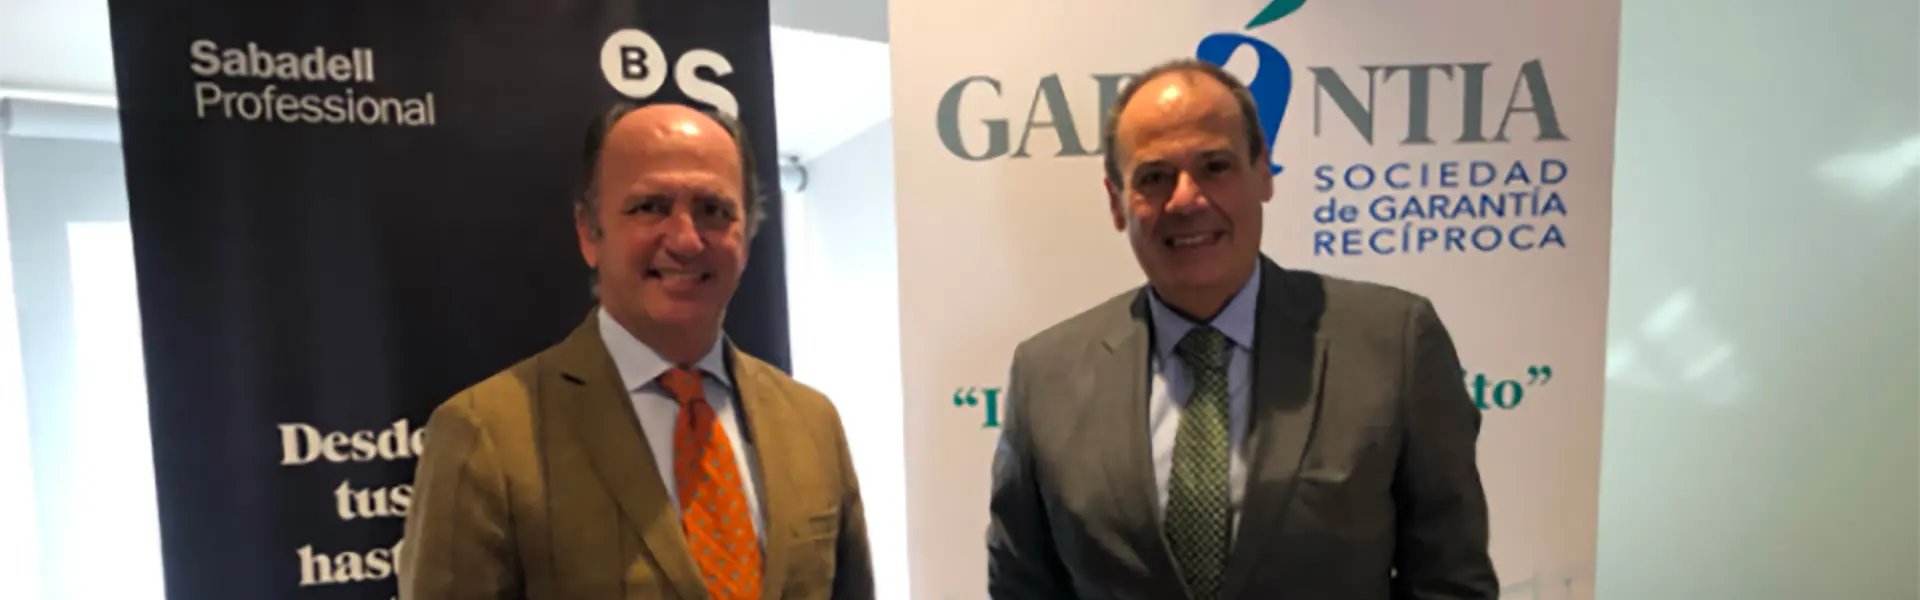 Garántia y Banco Sabadell firman un convenio para facilitar acceso a la financiación a pymes y autónomos de Andalucía ultimas noticias